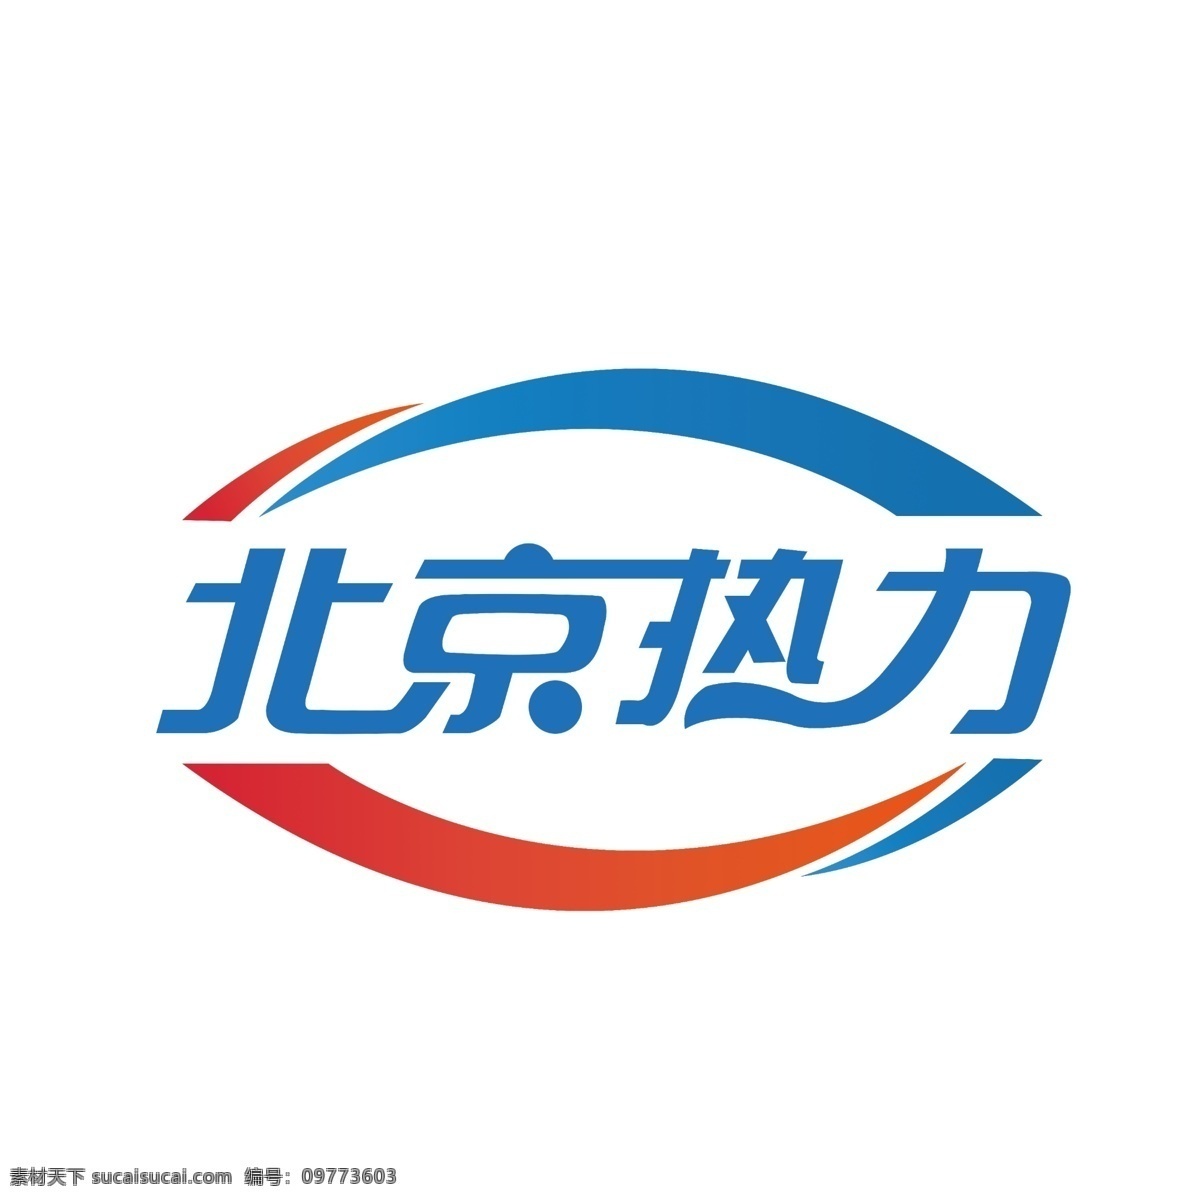 北京 热力 logo 专业设计标志 平面设计 热力源文件 矢量logo 标志图标 其他图标